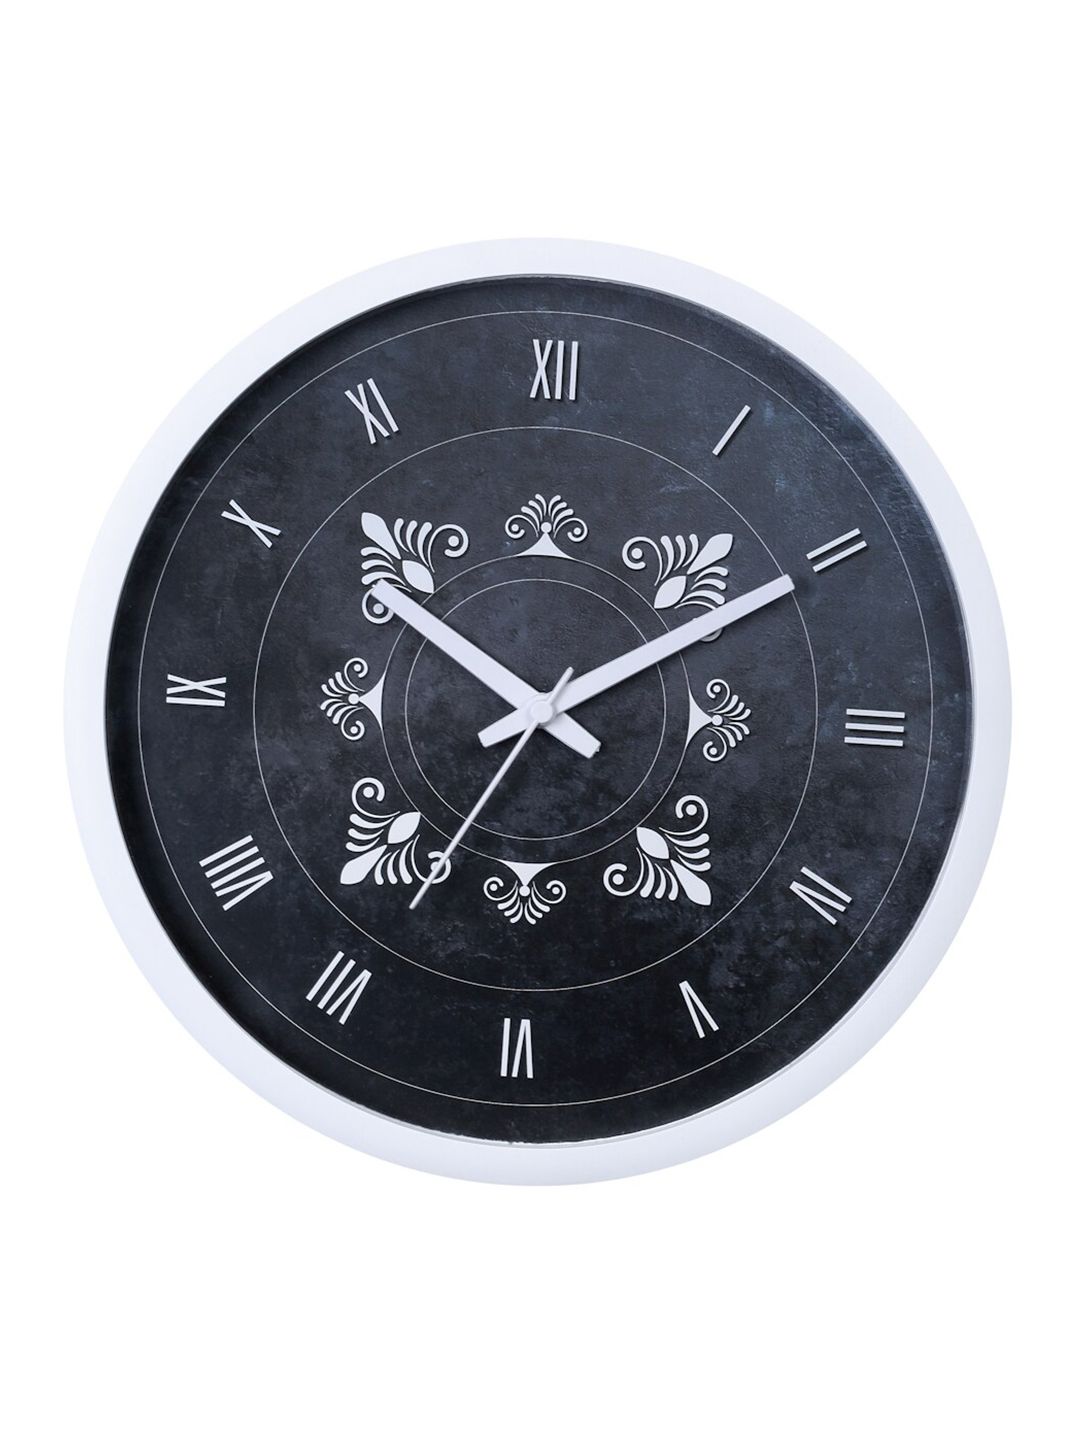 Bodh Design Black & White Printed Contemporary Wall Clock Price in India